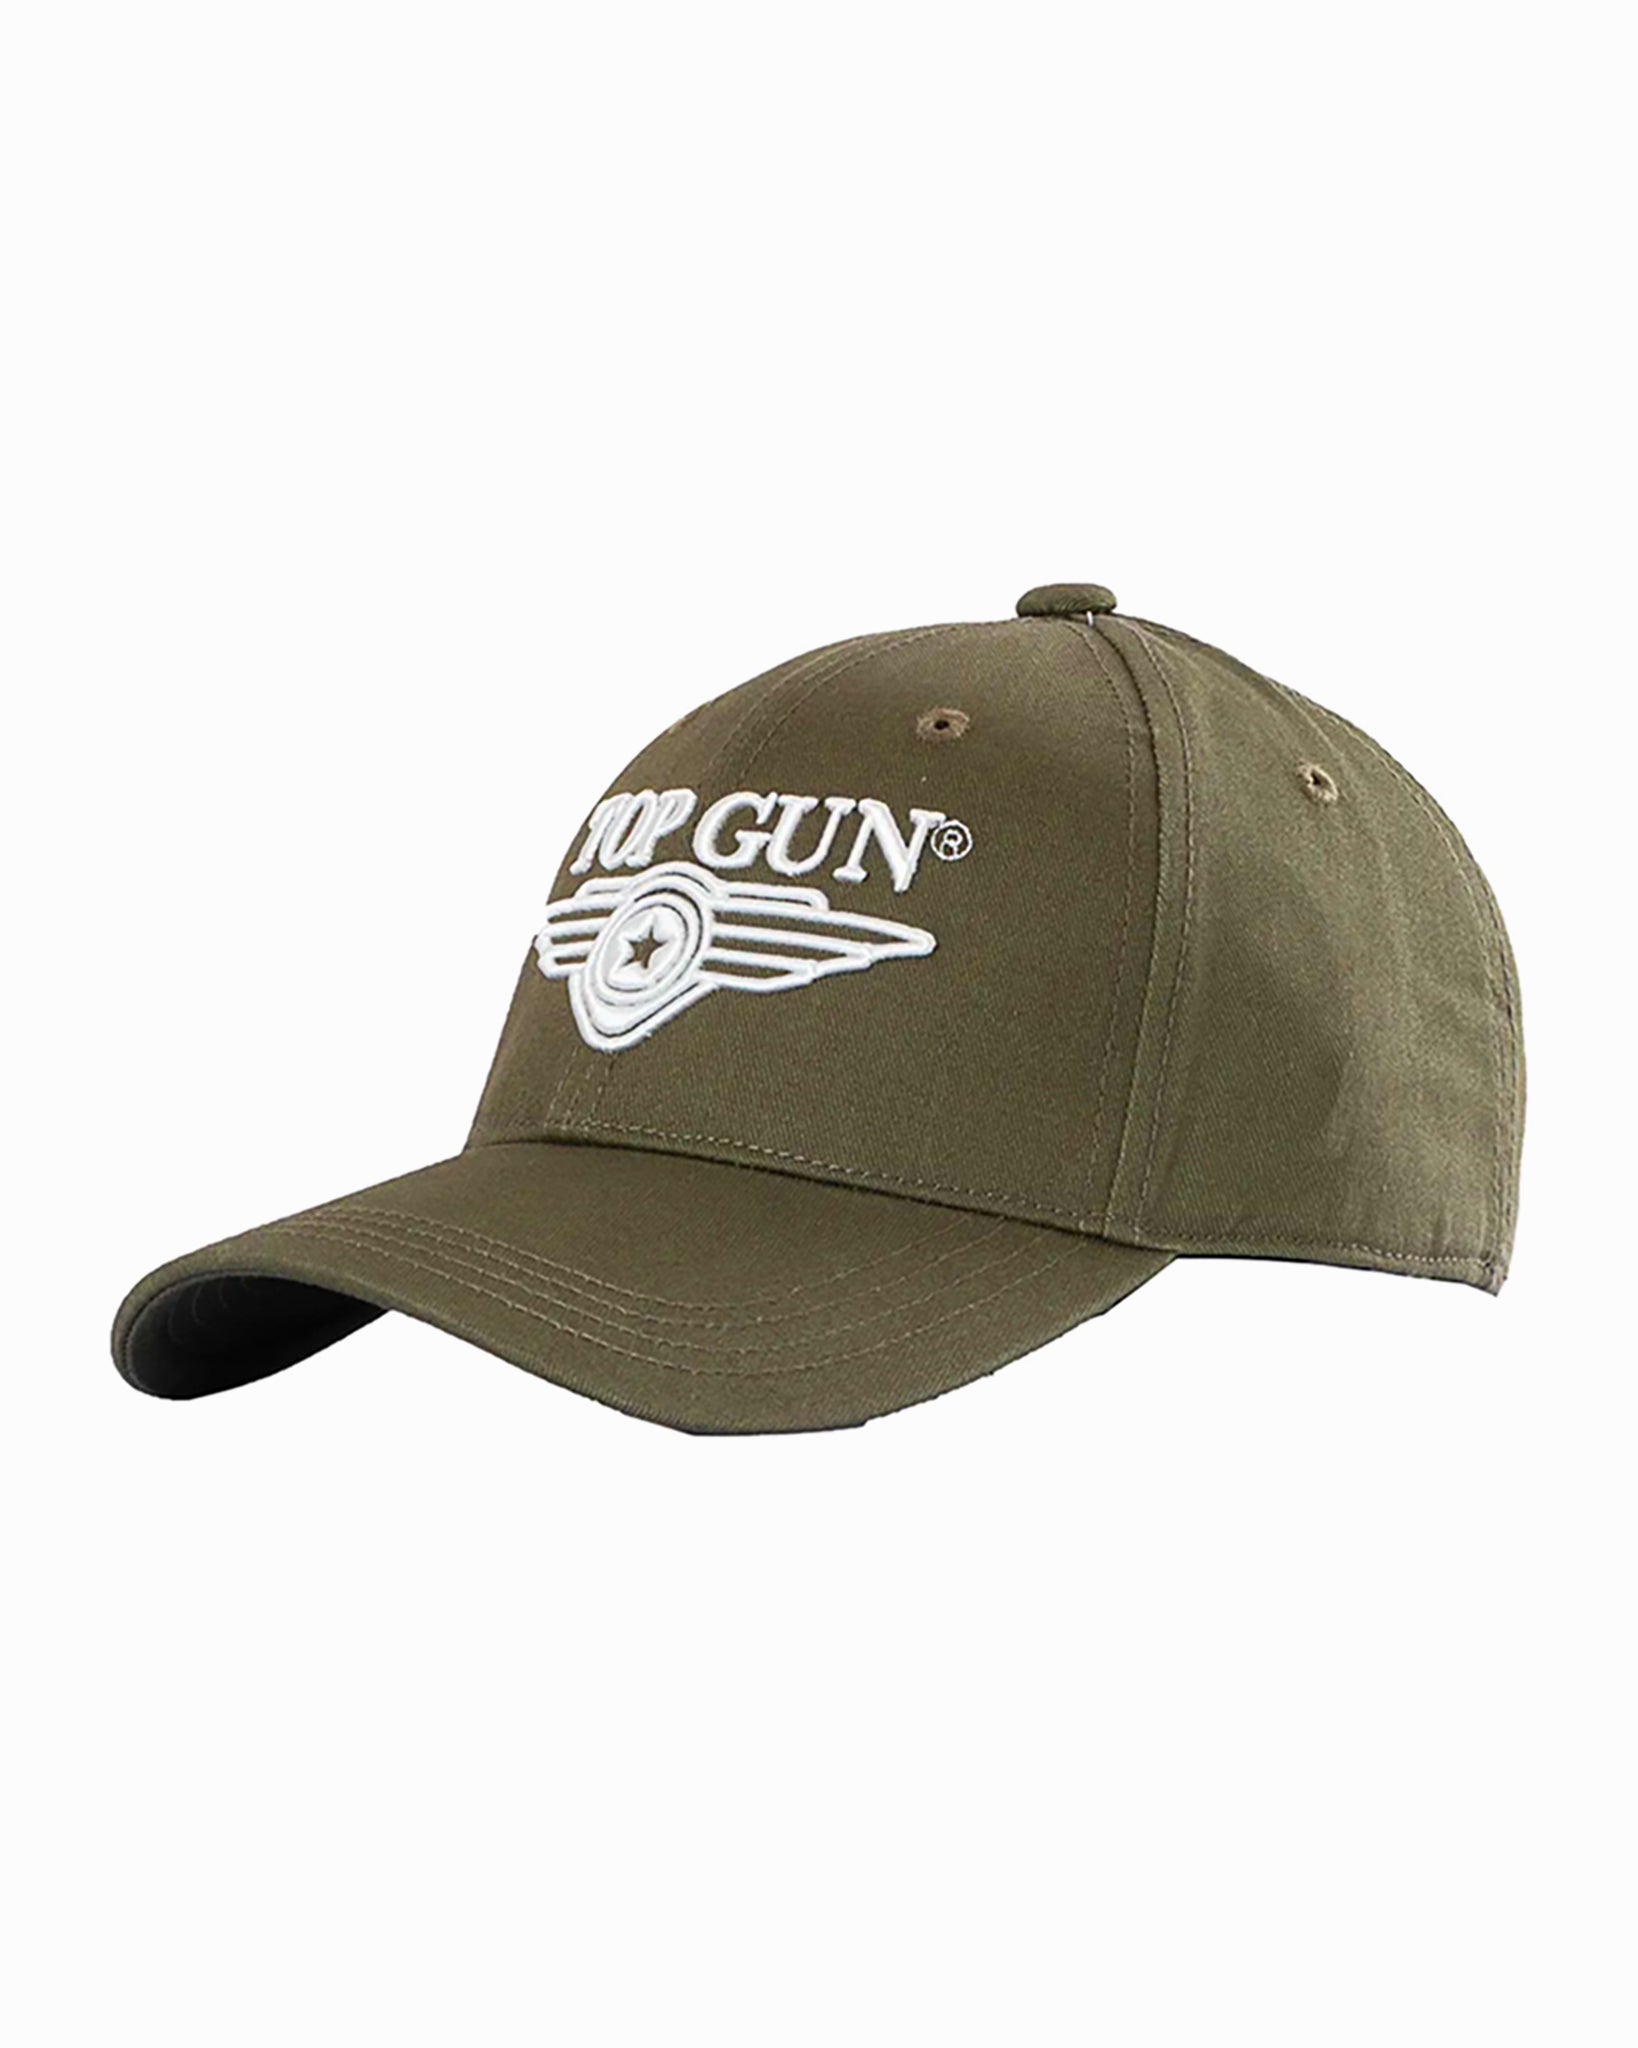 TOP GUN® 3D WINGS – Store CAP Top Gun LOGO